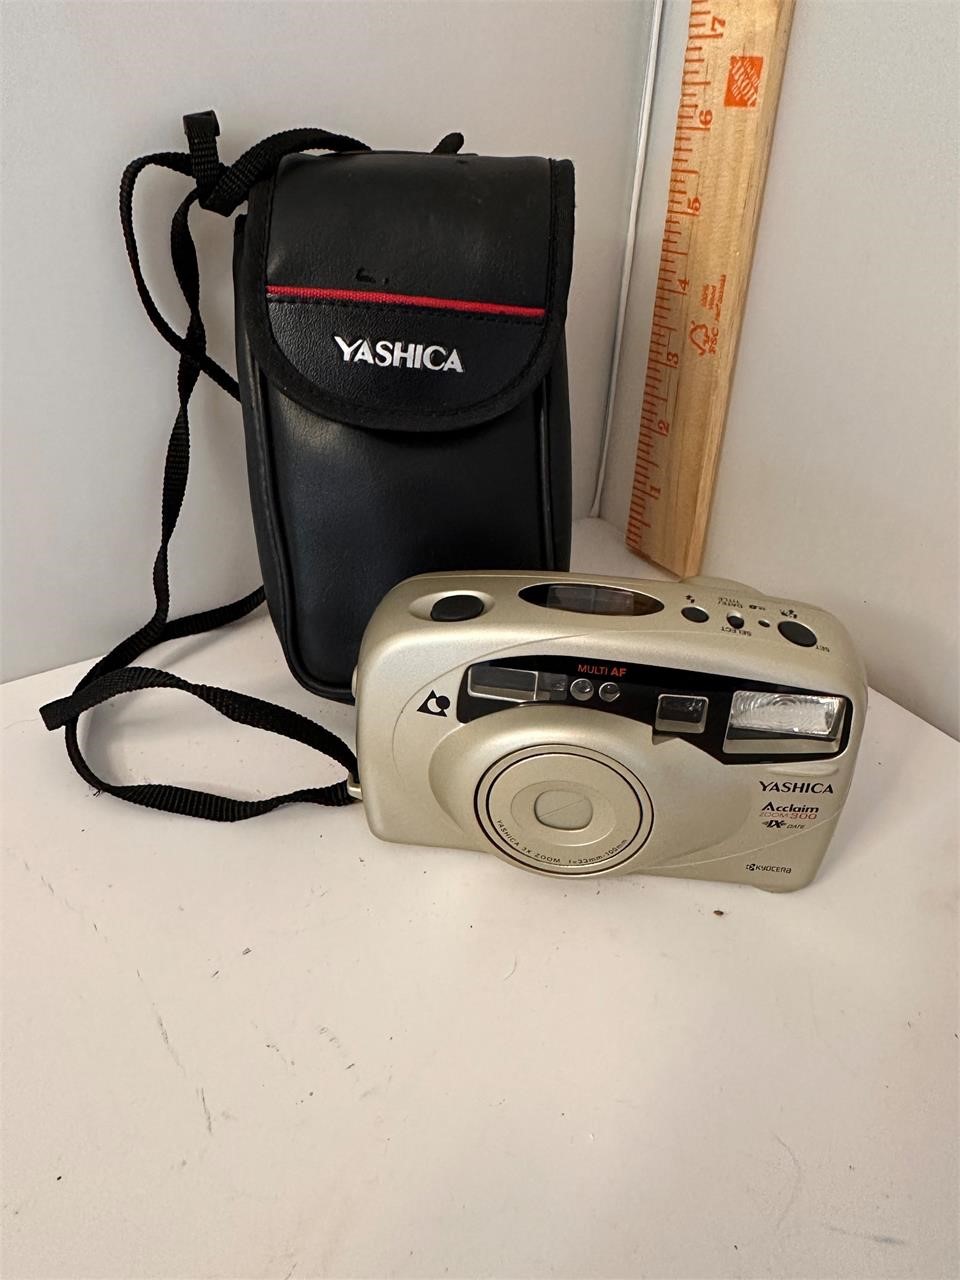 Yashica Acclaim Zoom 300 camera